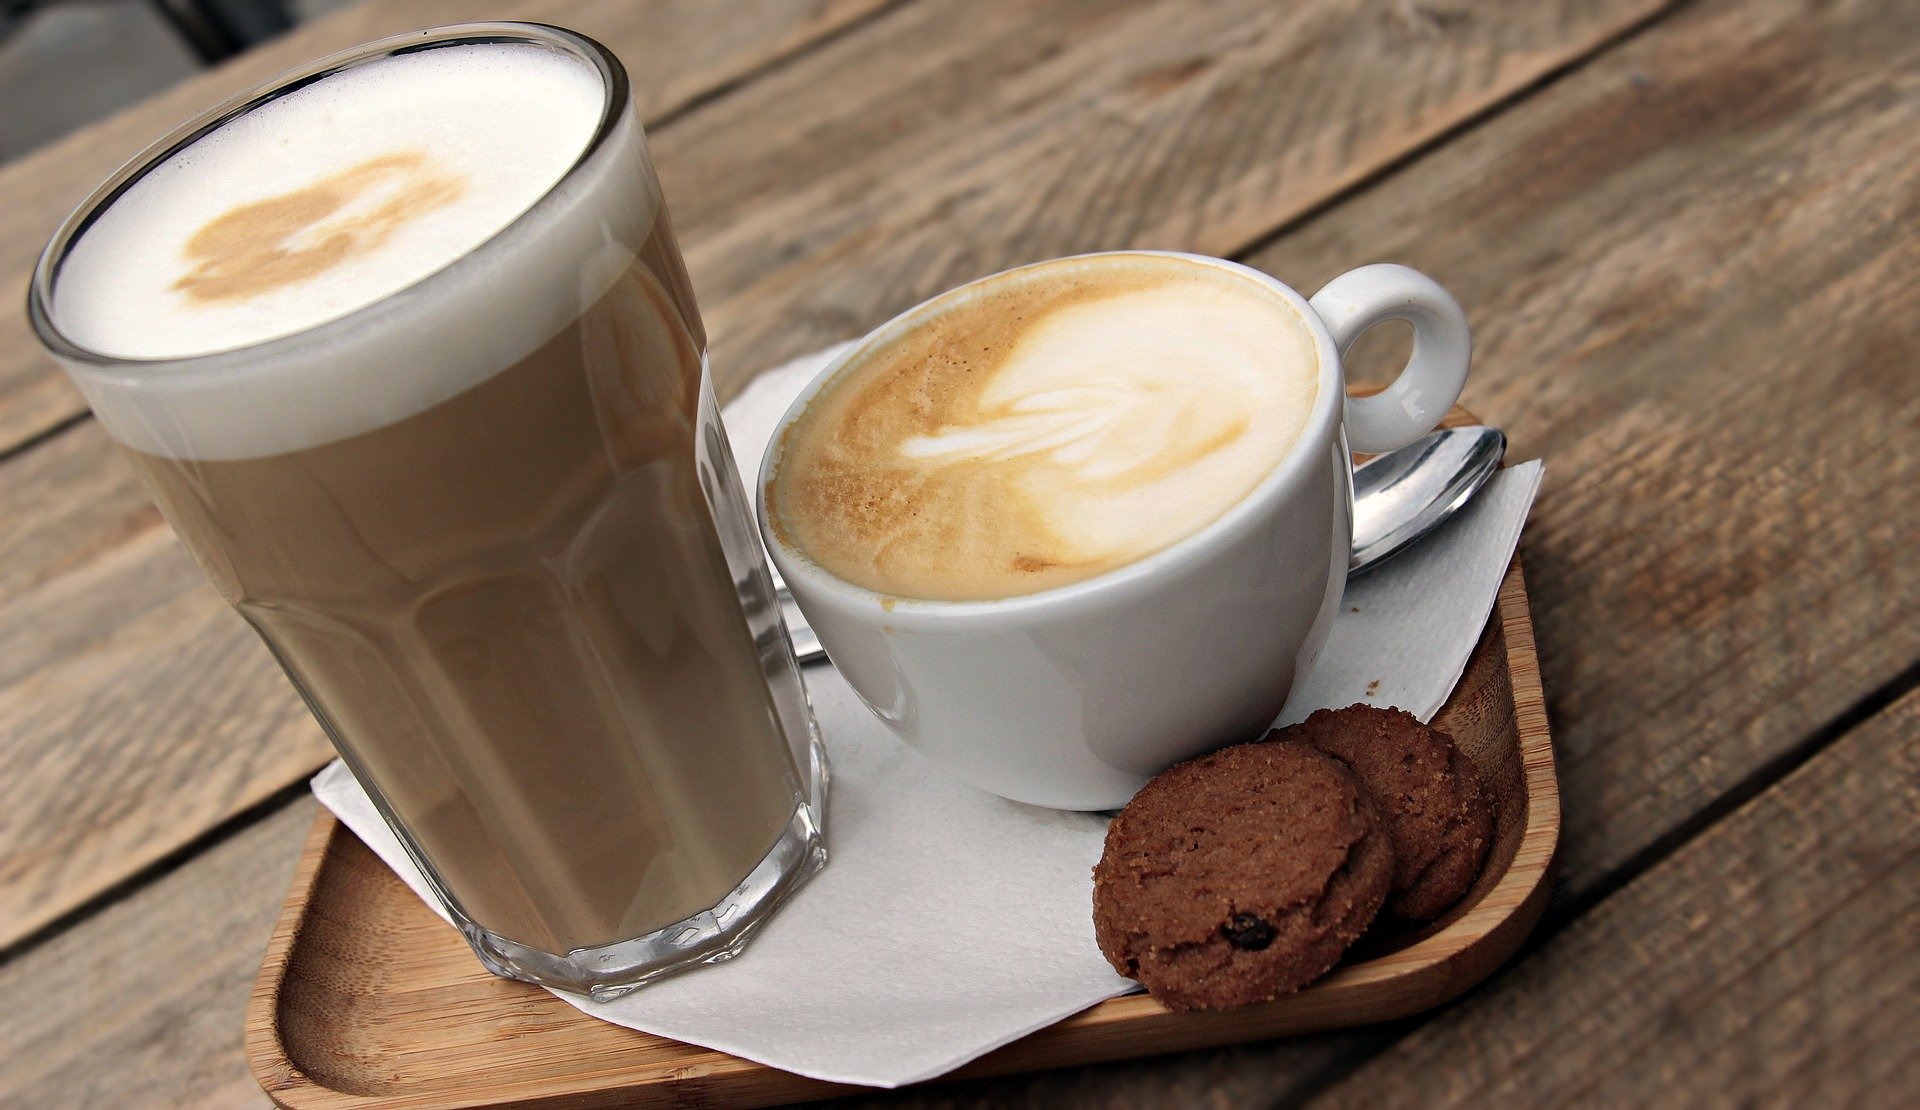 Siebträgermaschine latte macchiato - Die besten Siebträgermaschine latte macchiato analysiert!